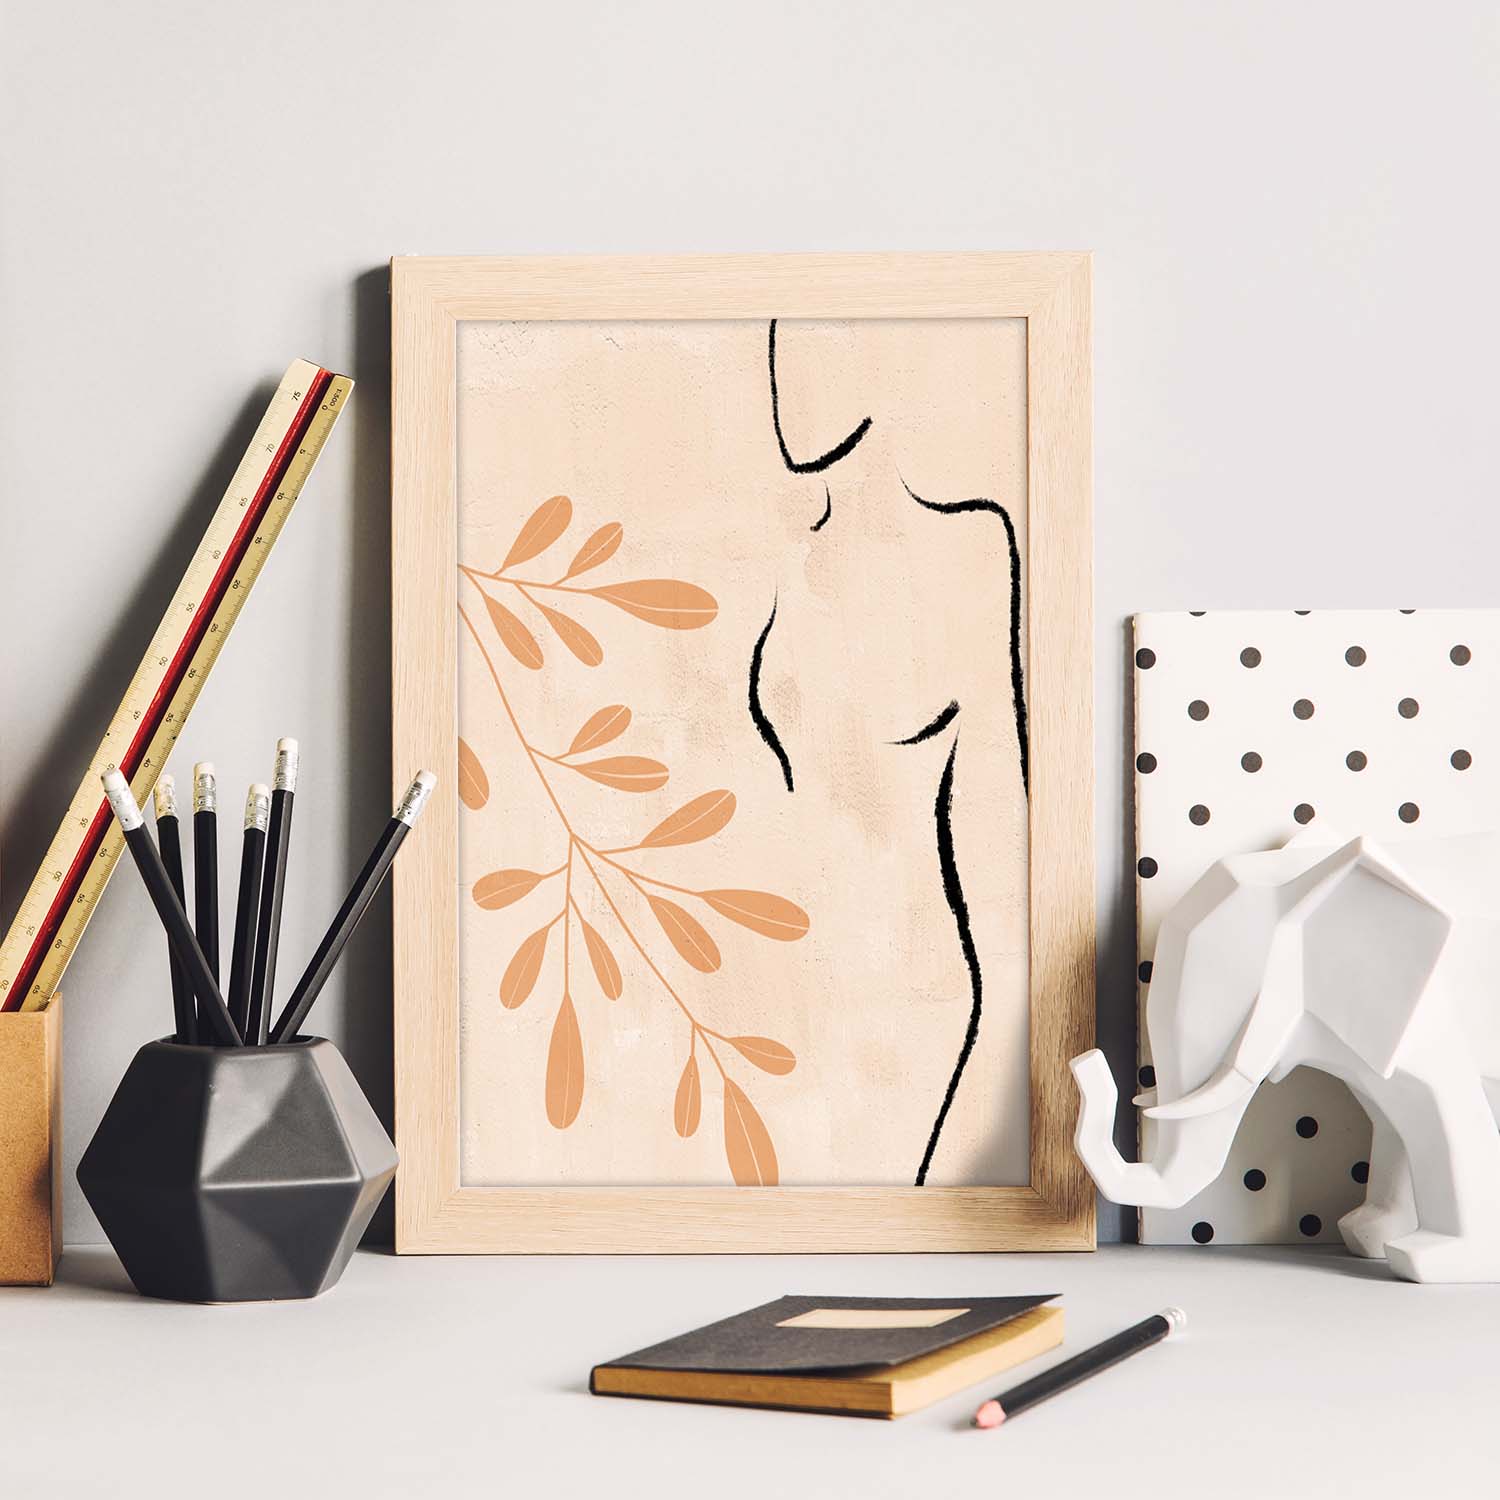 Poster con ilustracion de mujer. Dibujos con formas, caras, cuerpos y gestos de mujeres. 'Mujeres 7'.-Artwork-Nacnic-Nacnic Estudio SL